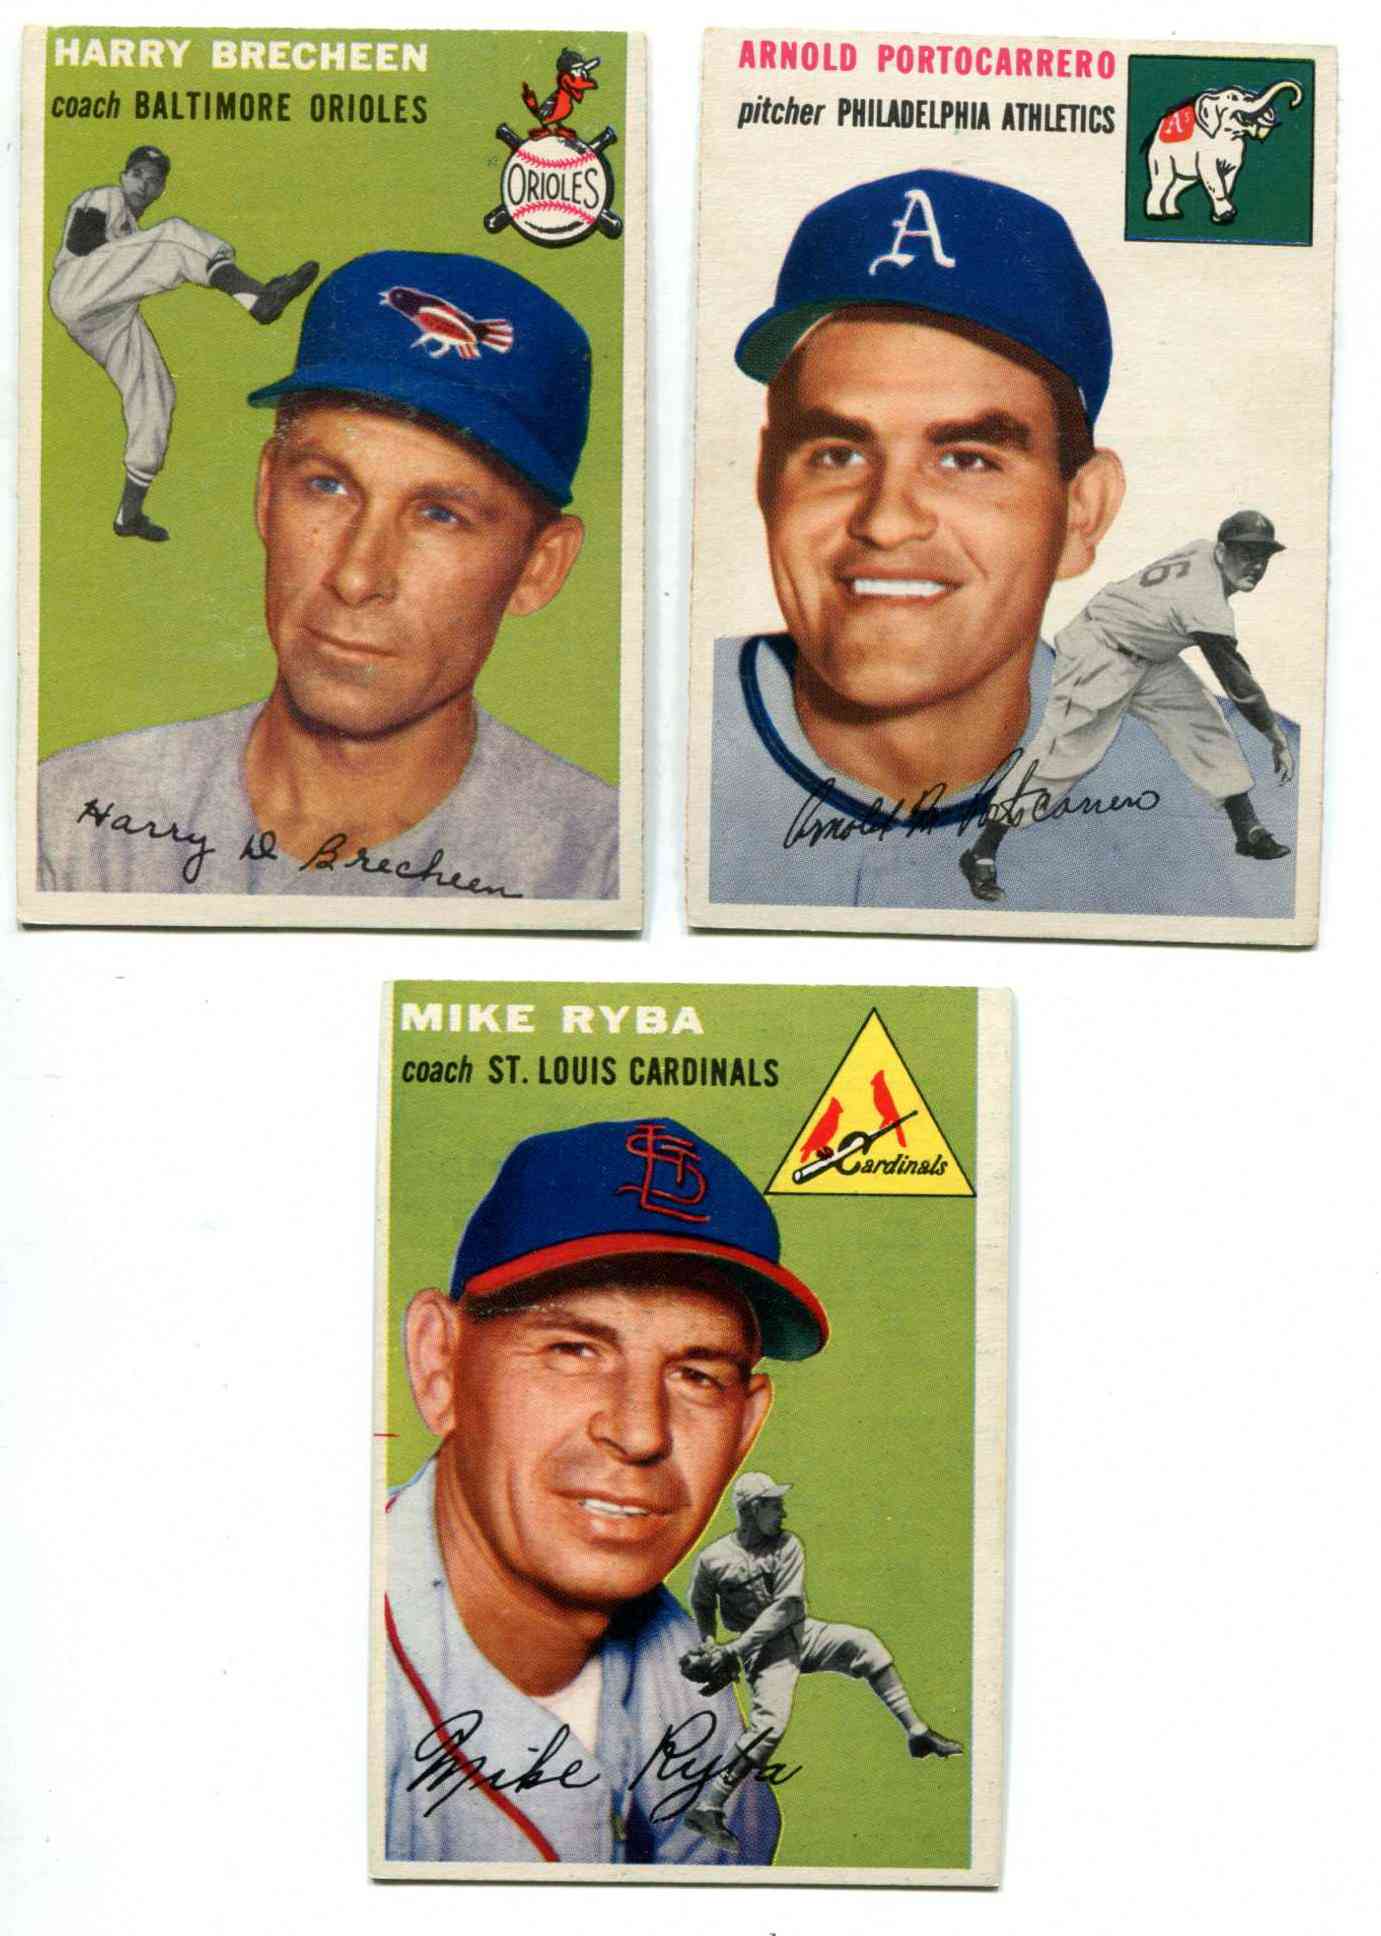 1954 Topps #203 Harry Brecheen COACH (Orioles) Baseball cards value